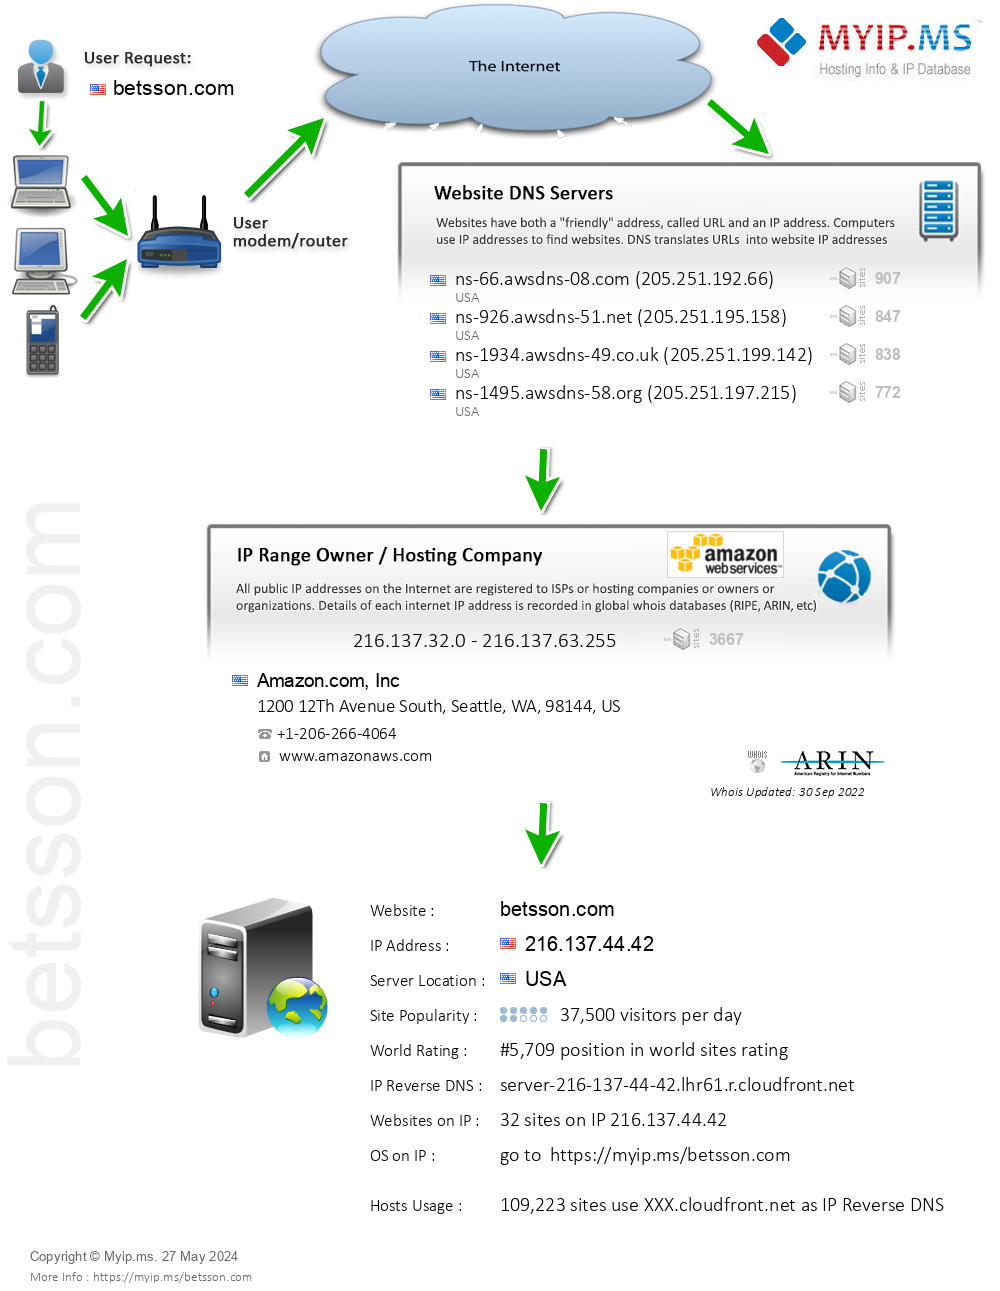 Betsson.com - Website Hosting Visual IP Diagram